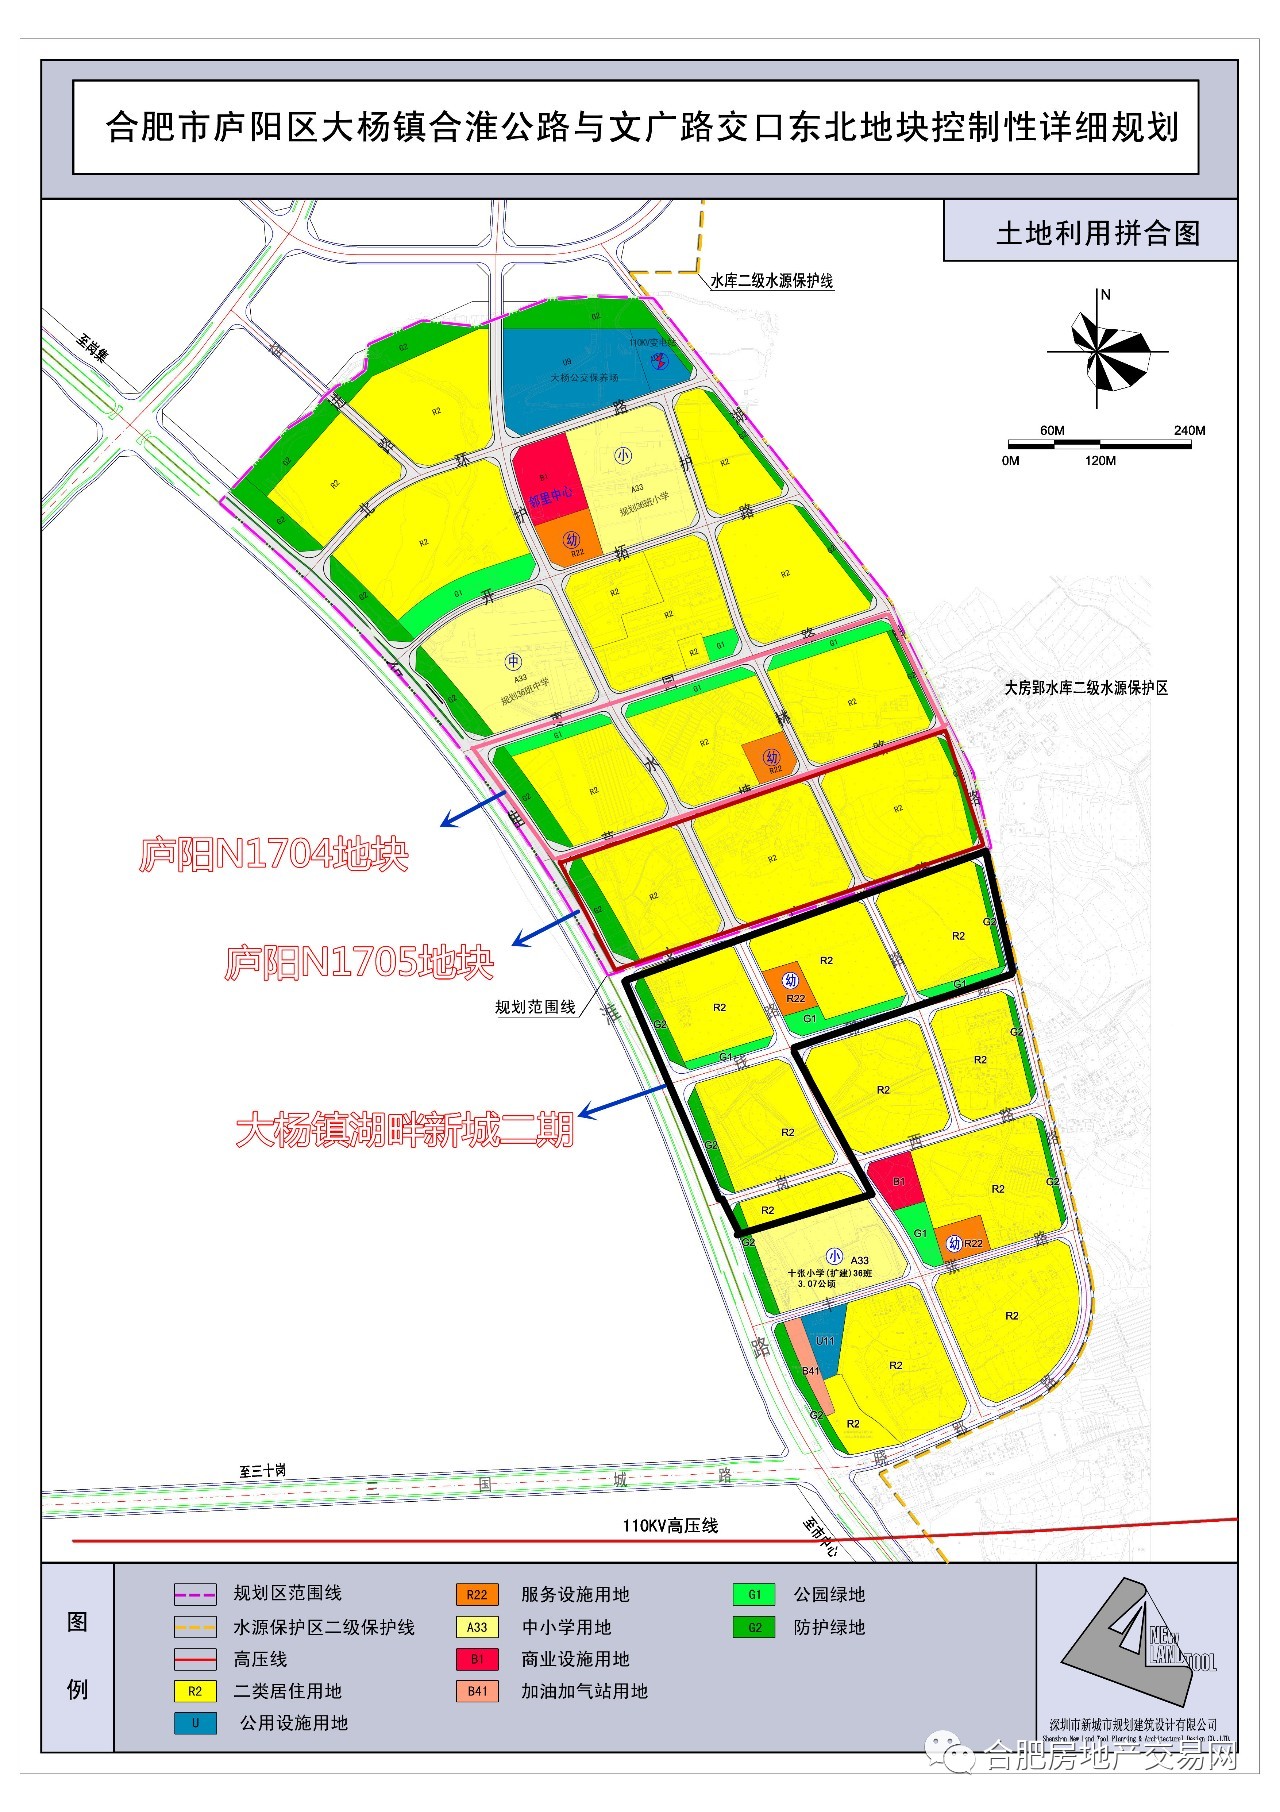 大杨镇湖畔新城二期安置房的规划配置,一定会有人感叹:这和普通小区